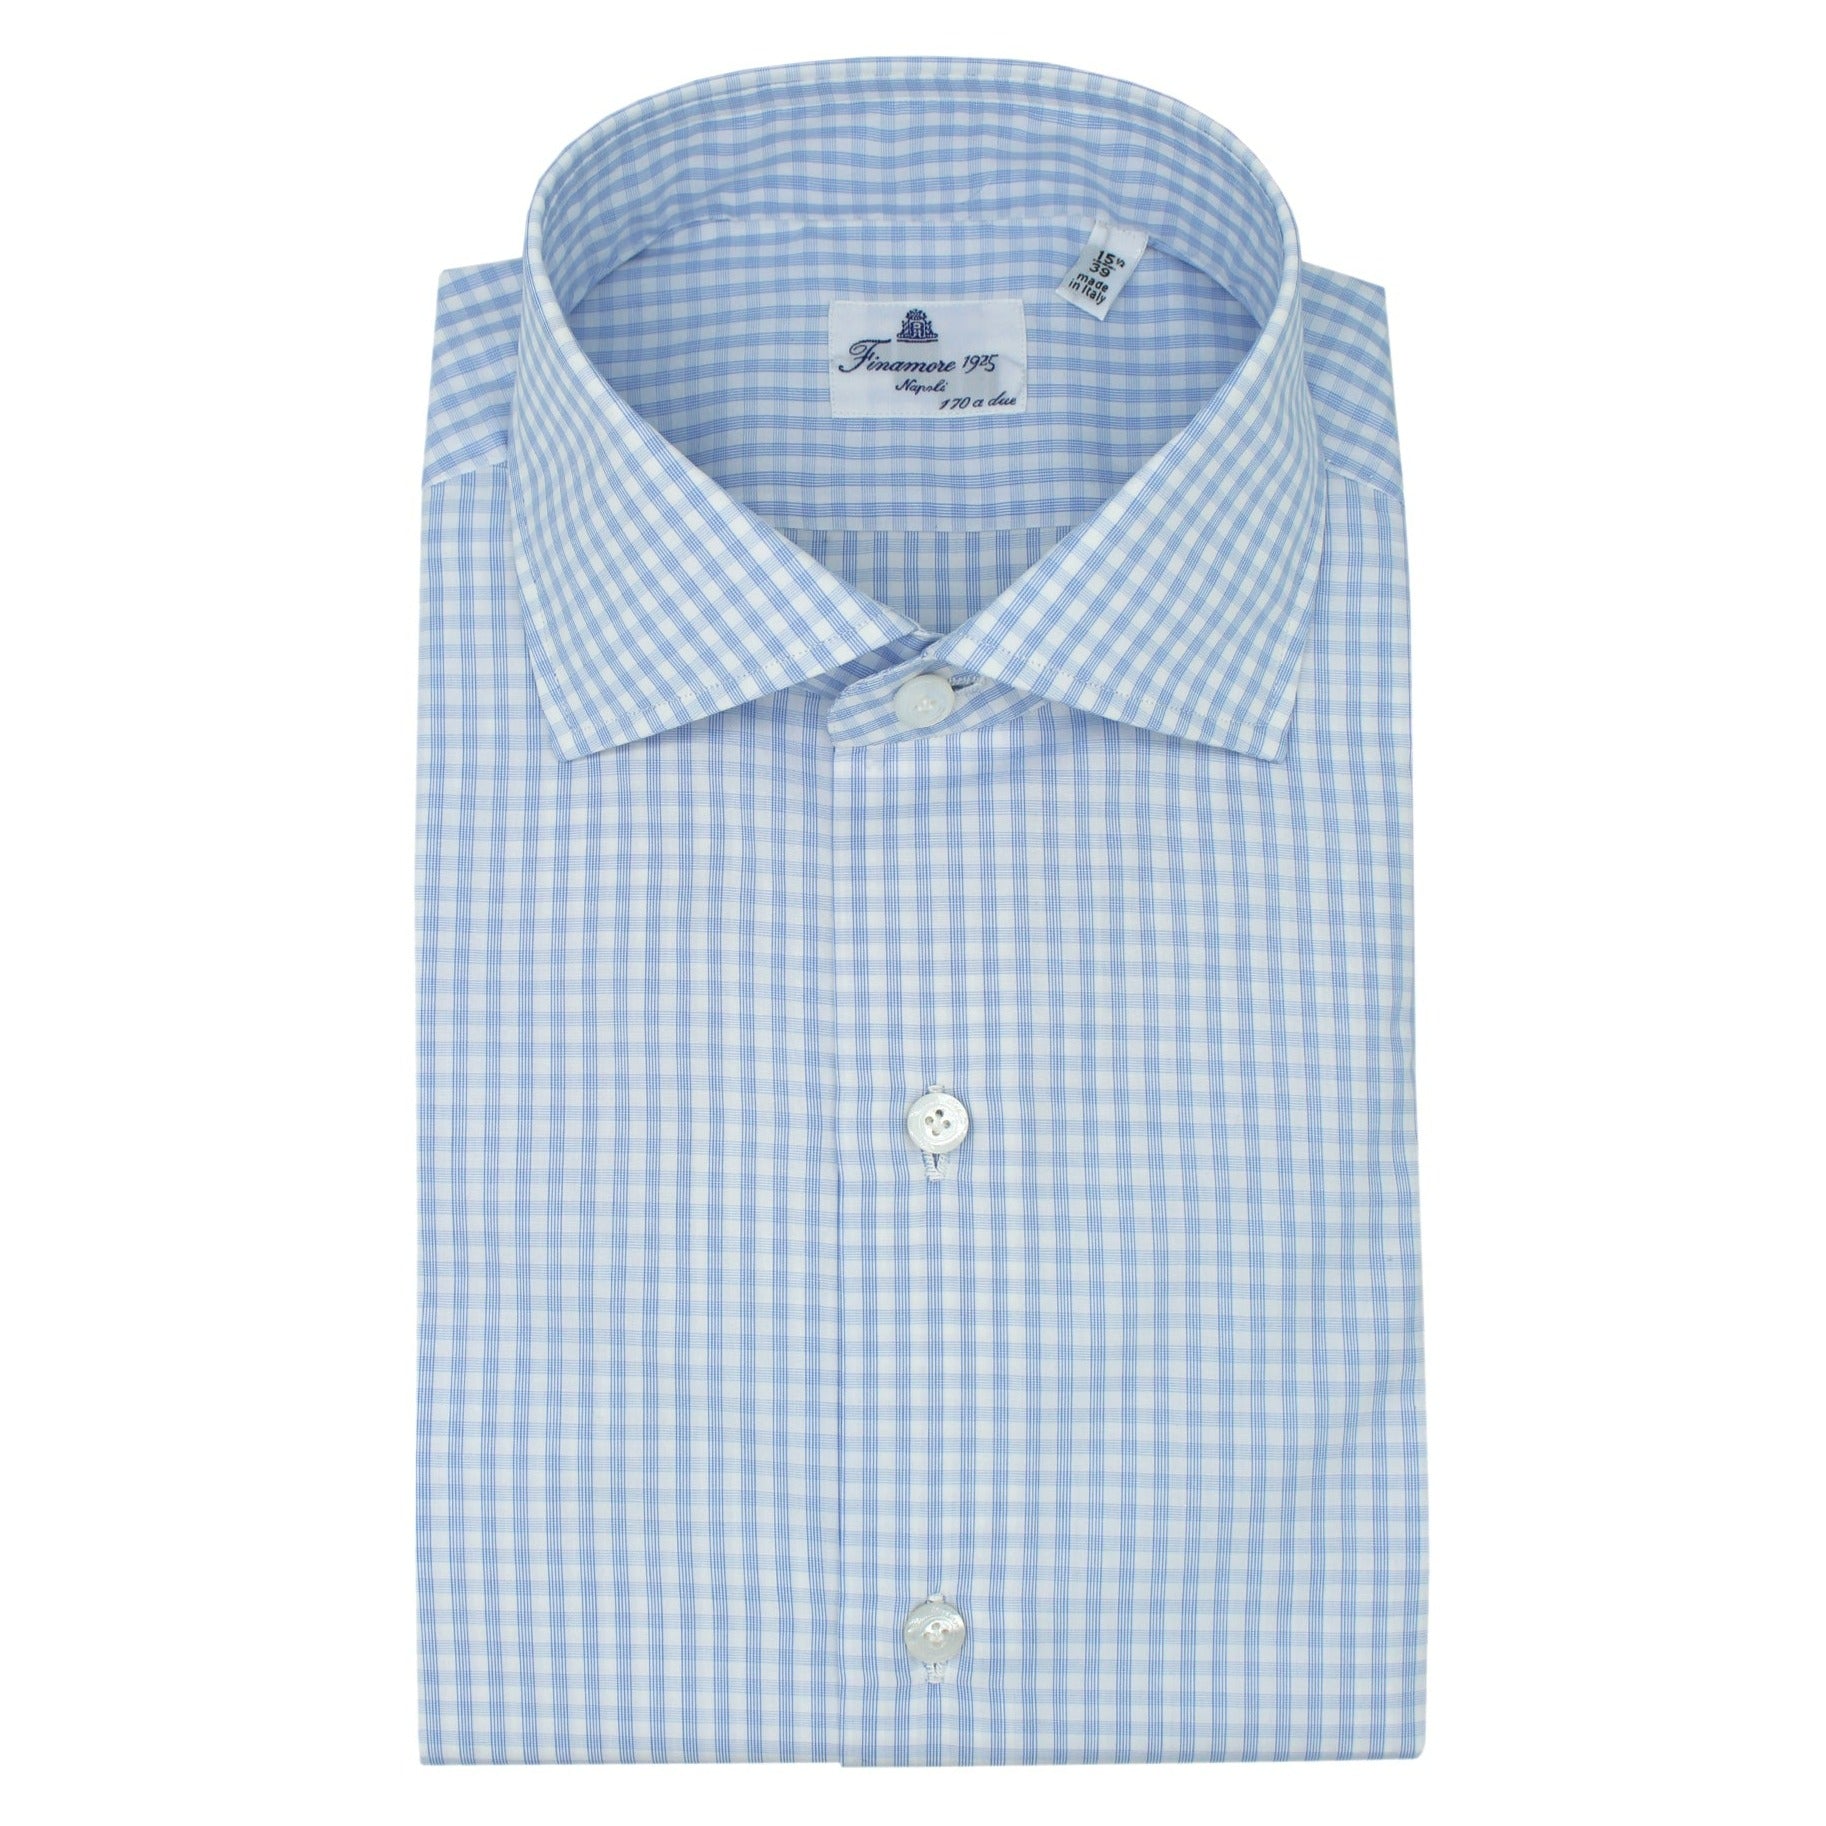 Shirt Napoli 170 a due fit regular light blue checks